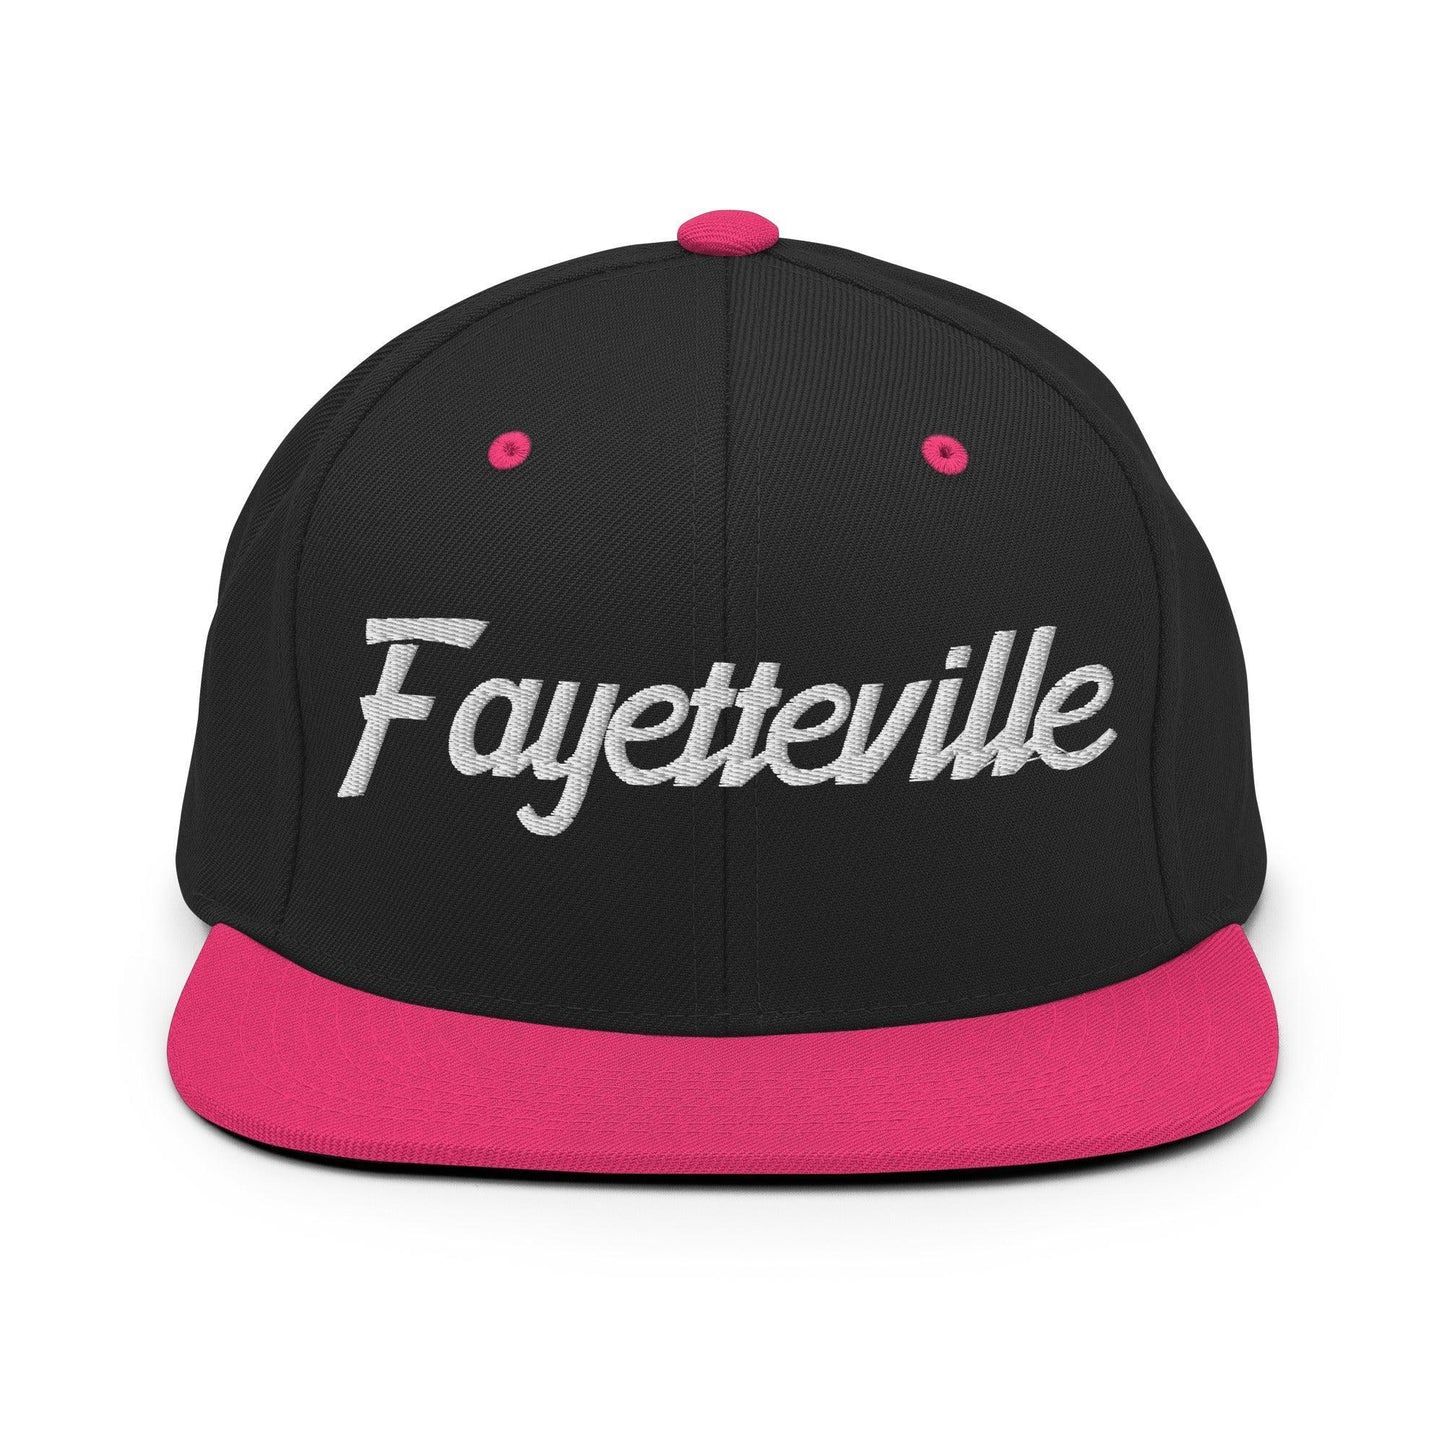 Fayetteville Script Snapback Hat Black Neon Pink